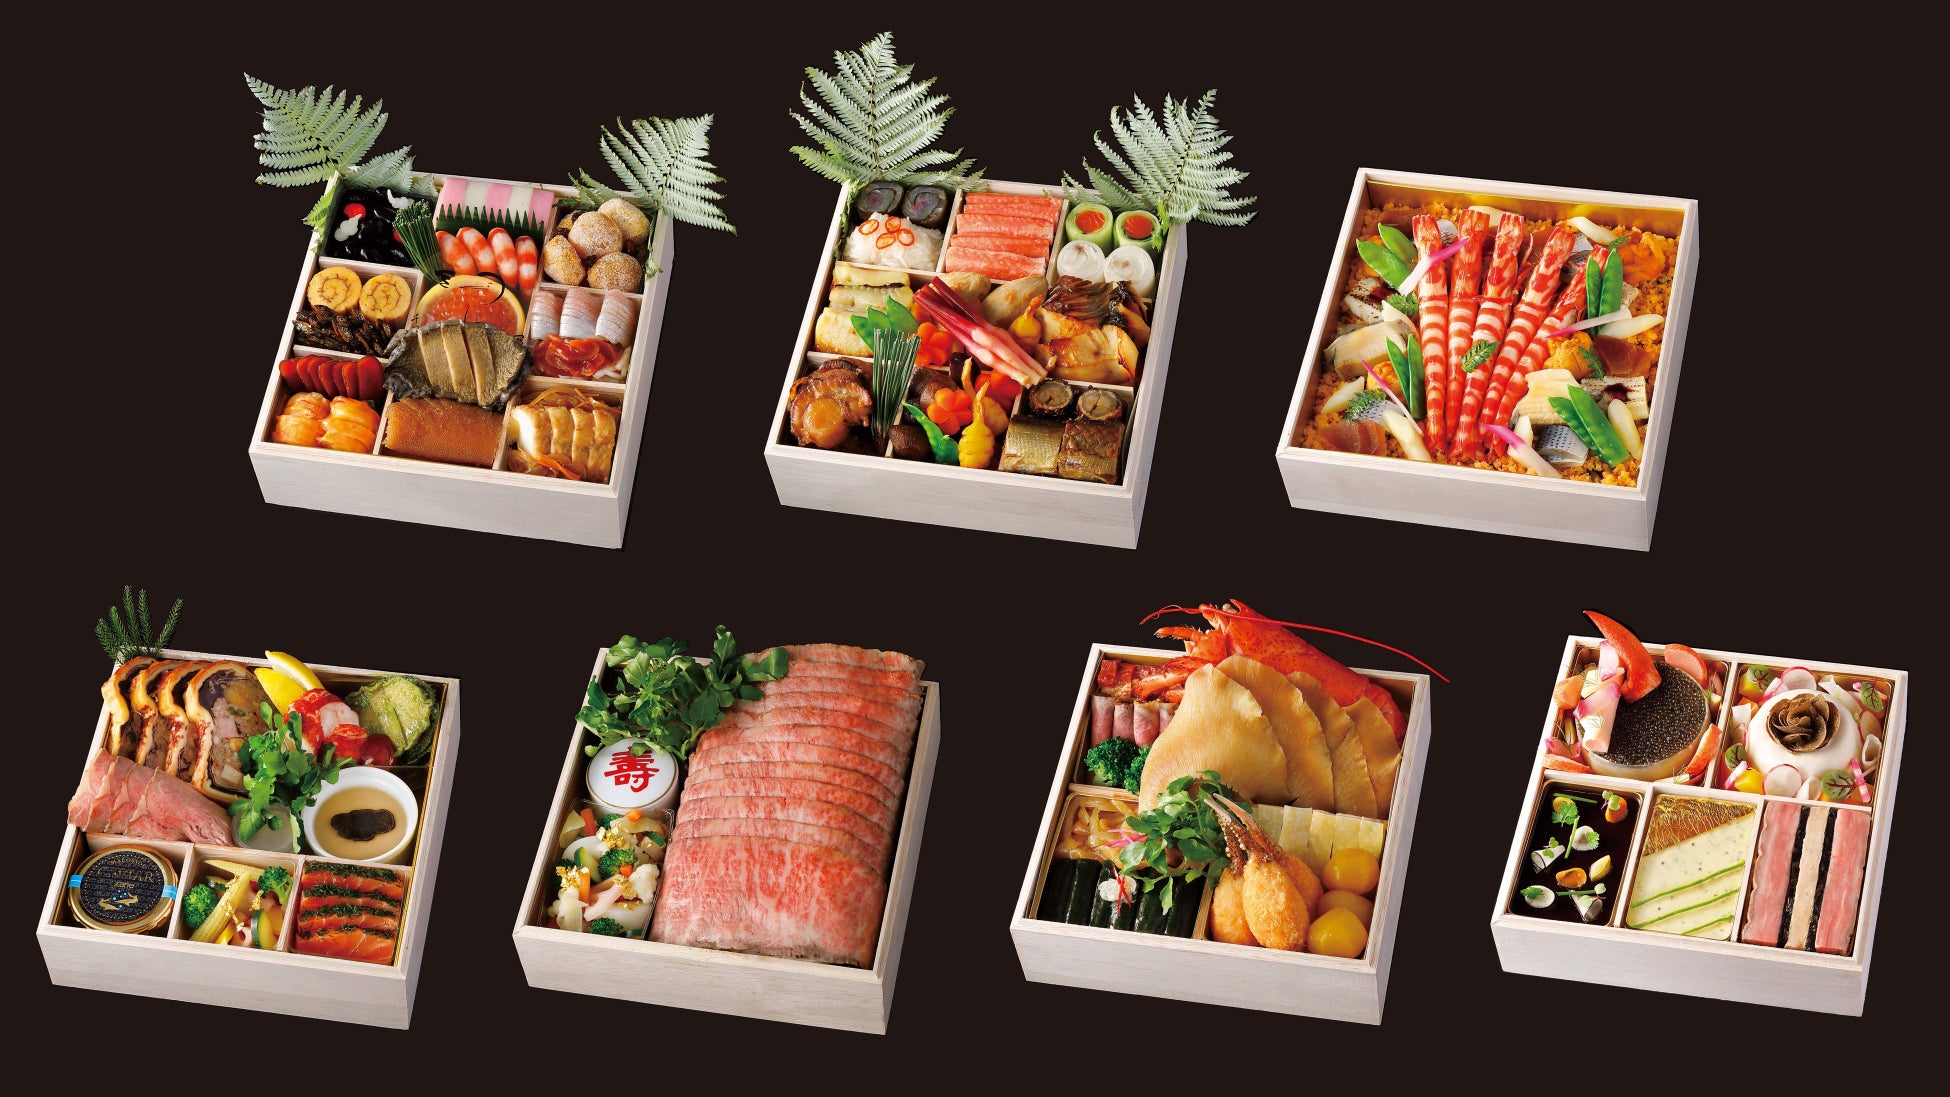 初登場【京阪百貨店守口店】バニラスイーツ専門店「バニラージュ」が期間限定で出店します。新商品「バニラージュアソートボックス（24個入）」も登場！秋冬の贈答品にも最適です。